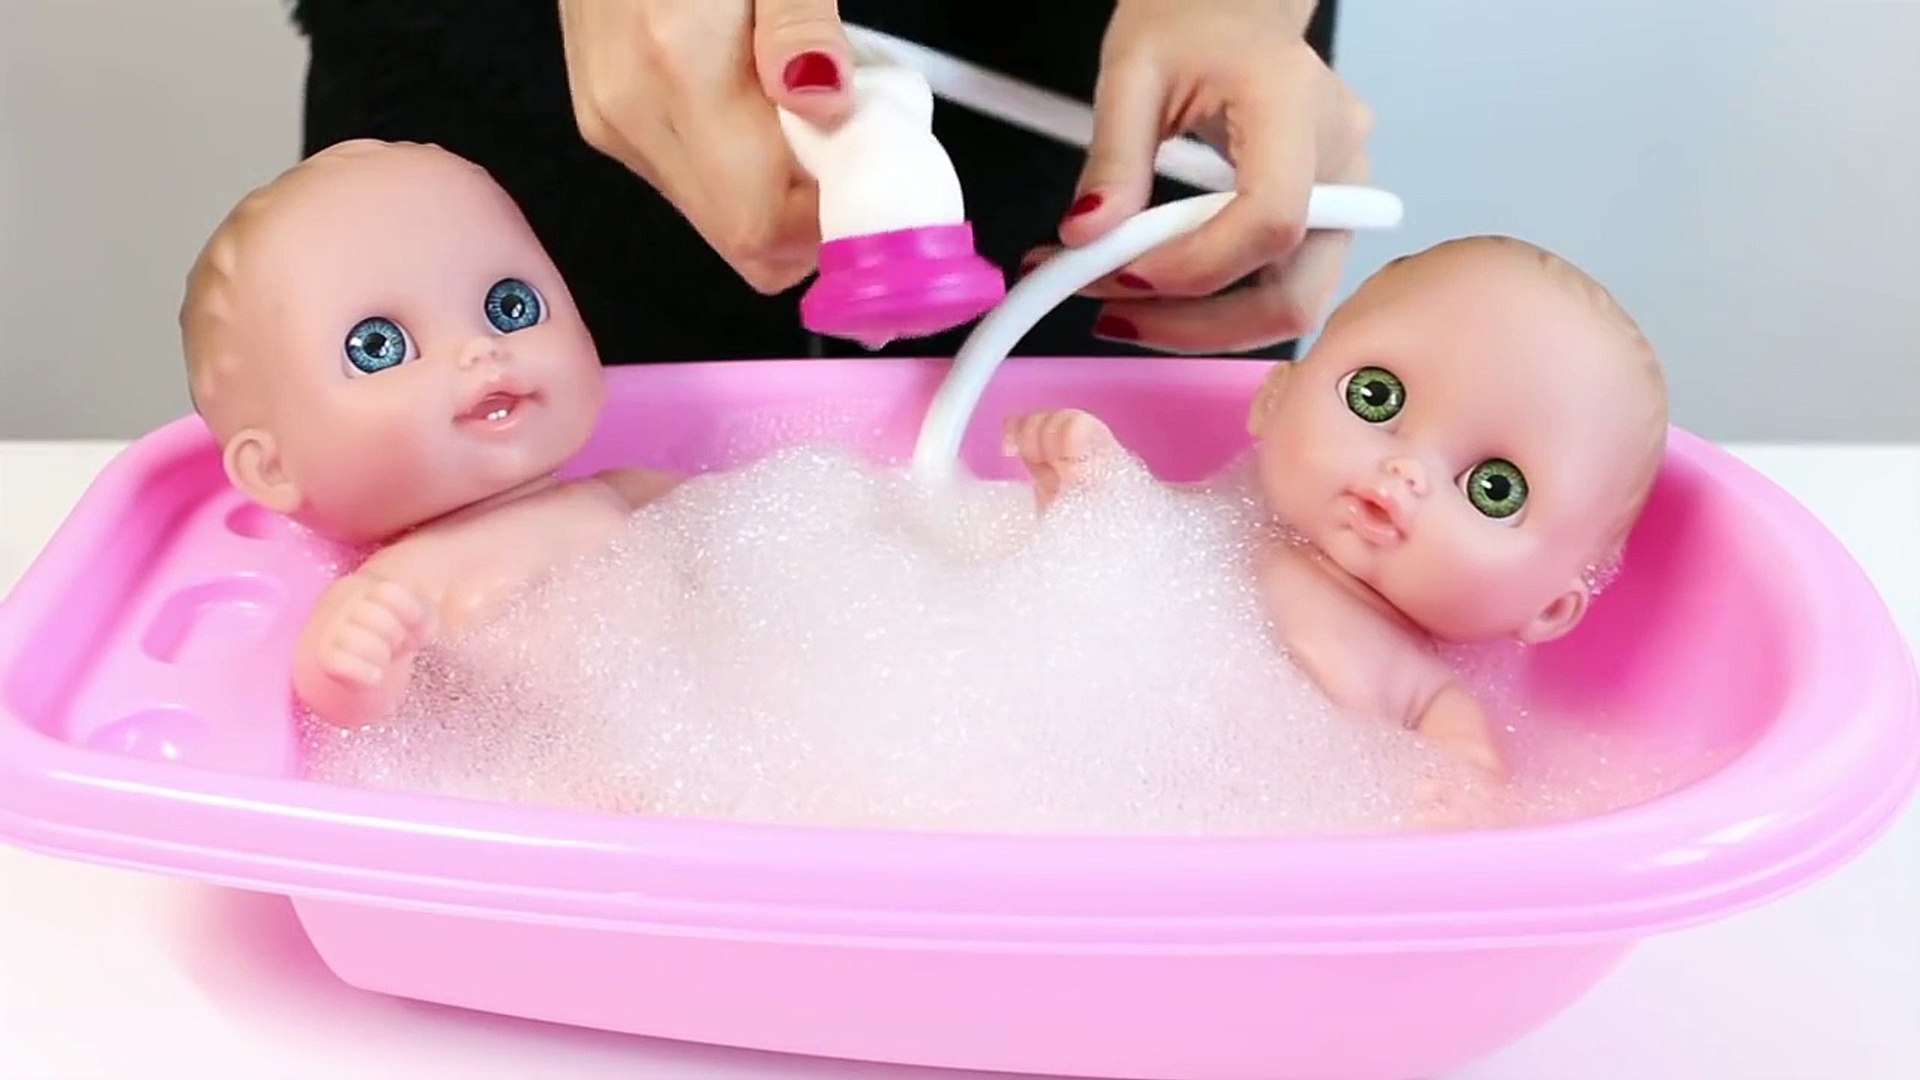 ⁣Twin Baby Doll Bathtim Lil' Cutesies' Babie Bathtub w/ Showe How t Bat a Baby Dol Toy Vide